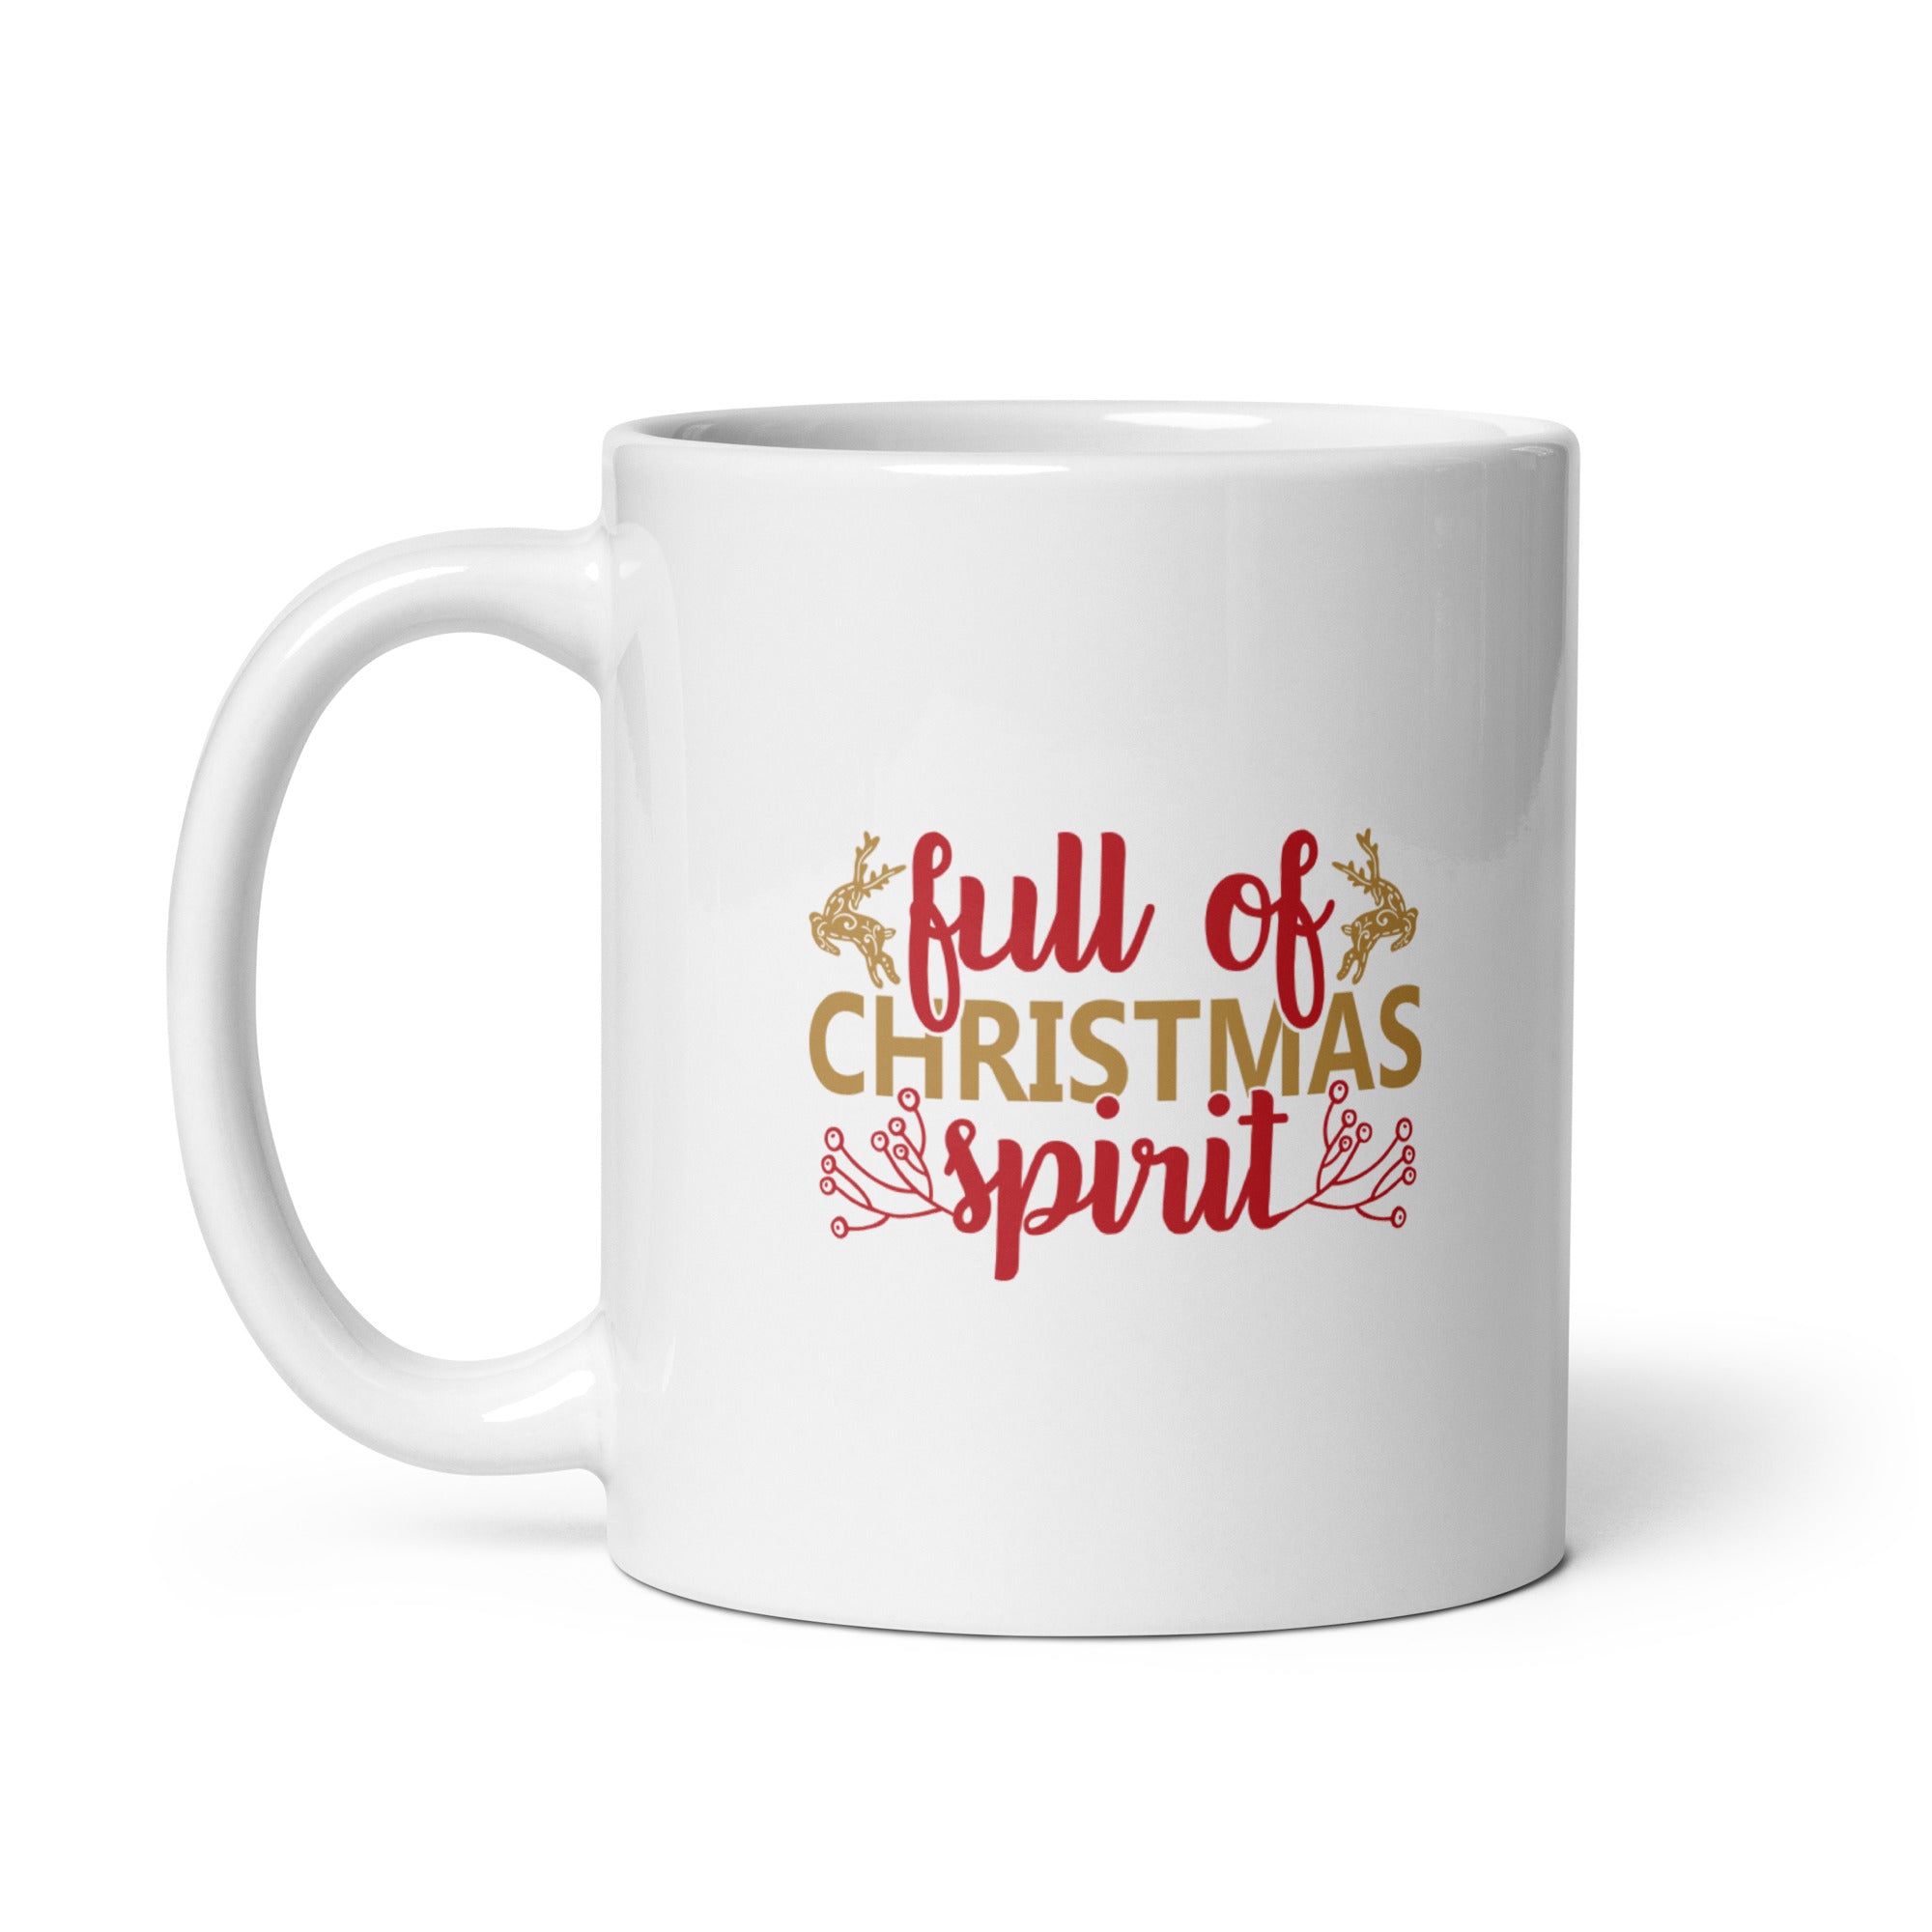 Full Of Christmas Spirit - White glossy mug